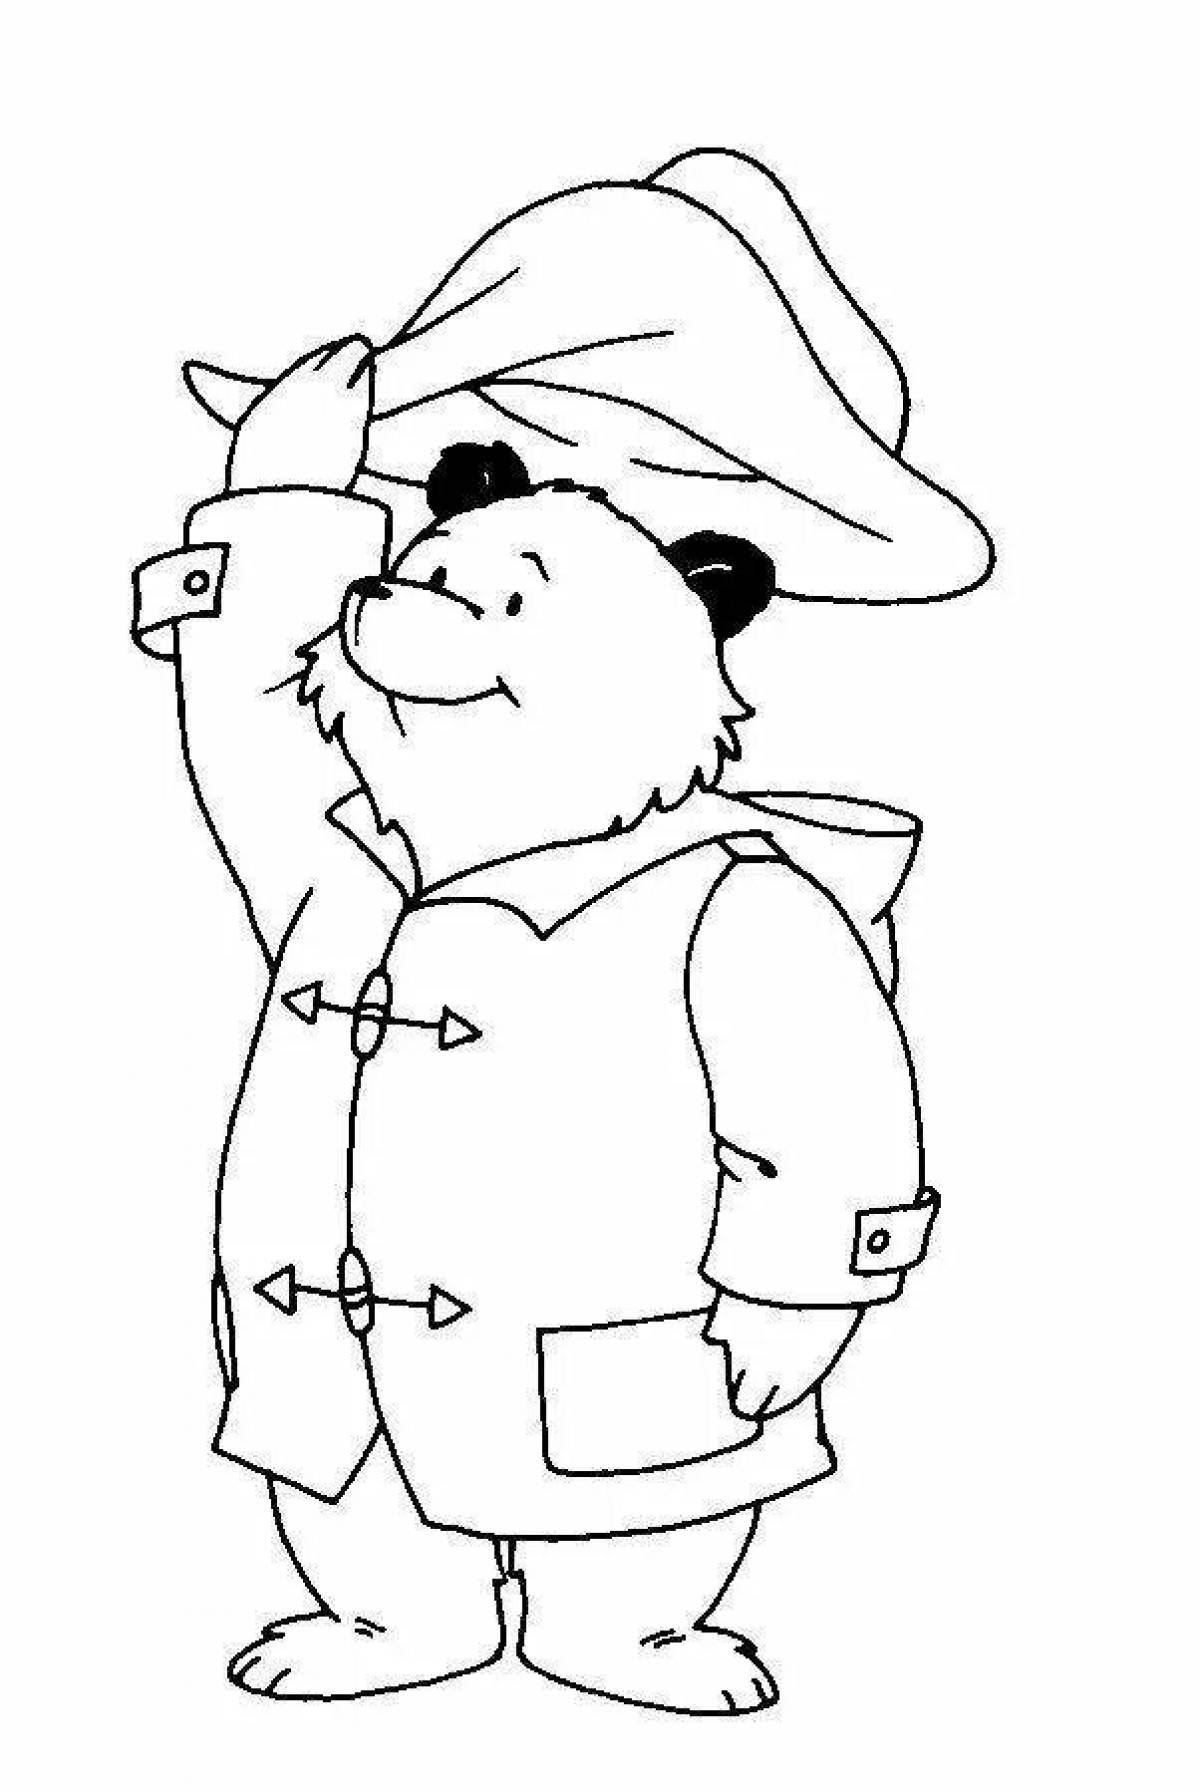 Outgoing paddington bear coloring